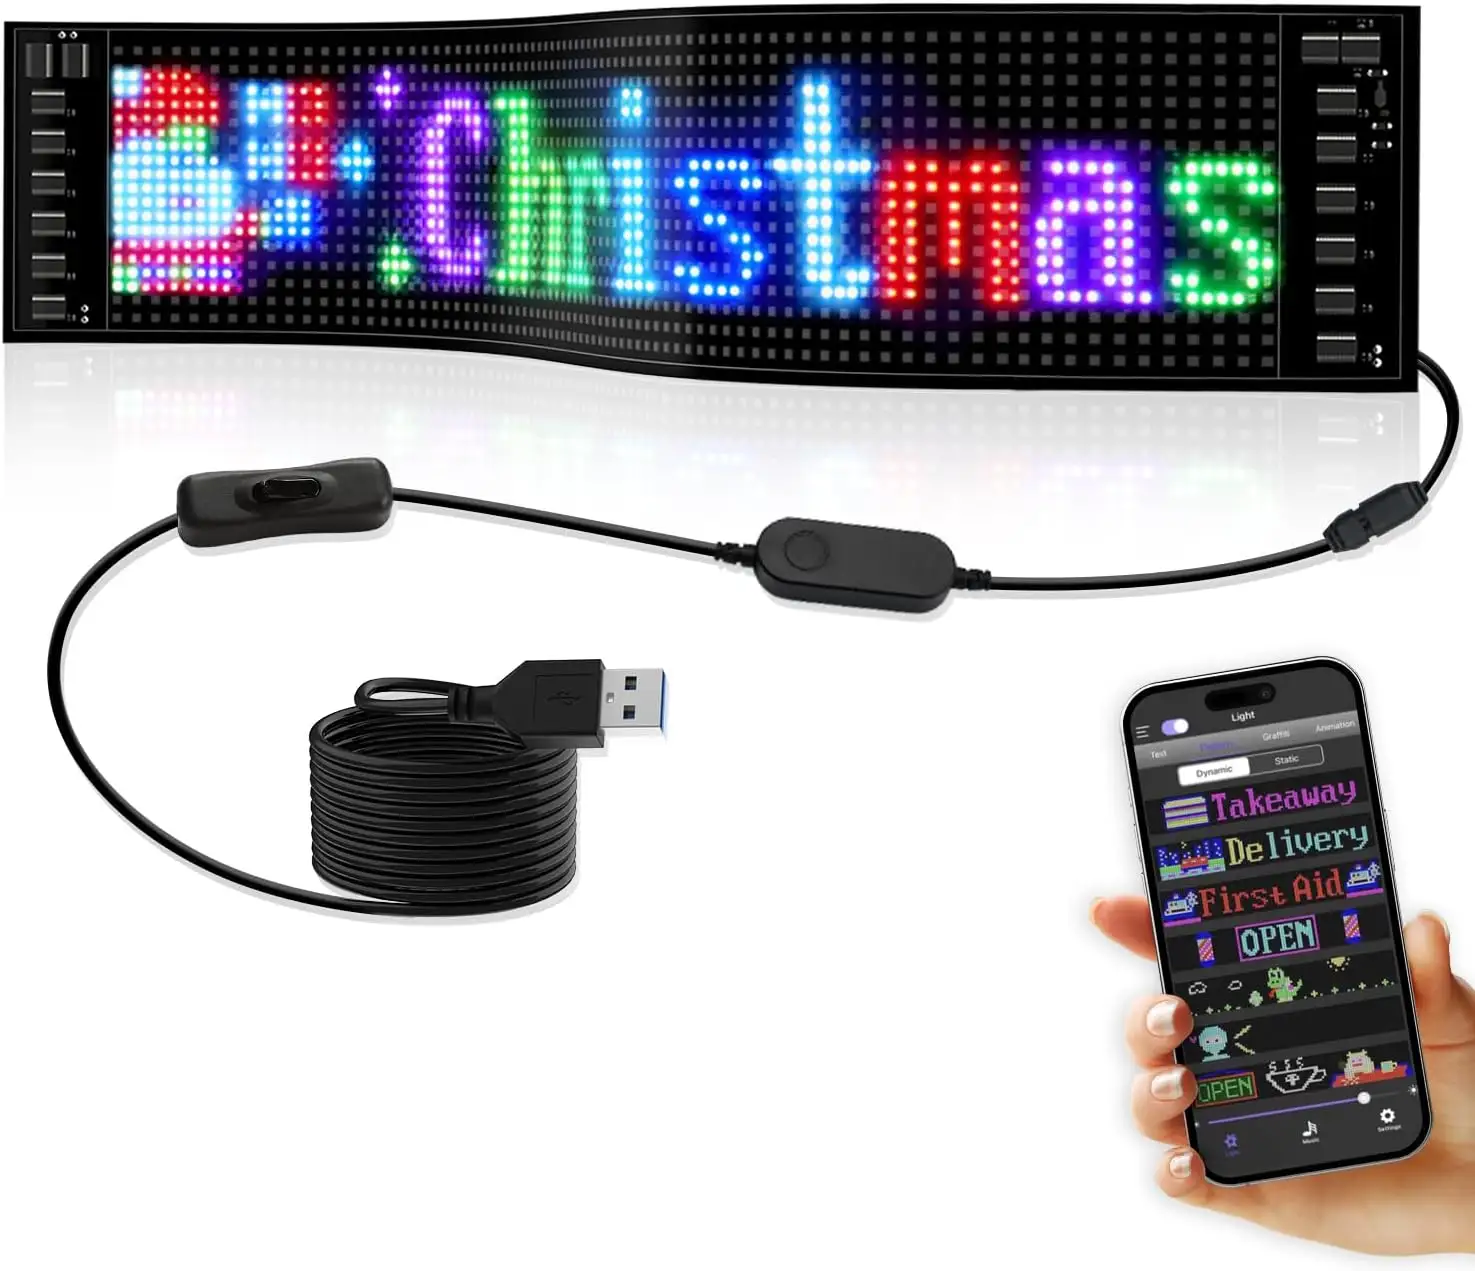 Mini esnek haddeleme ekranı RGB modülü led app programlanabilir elektronik işaretler